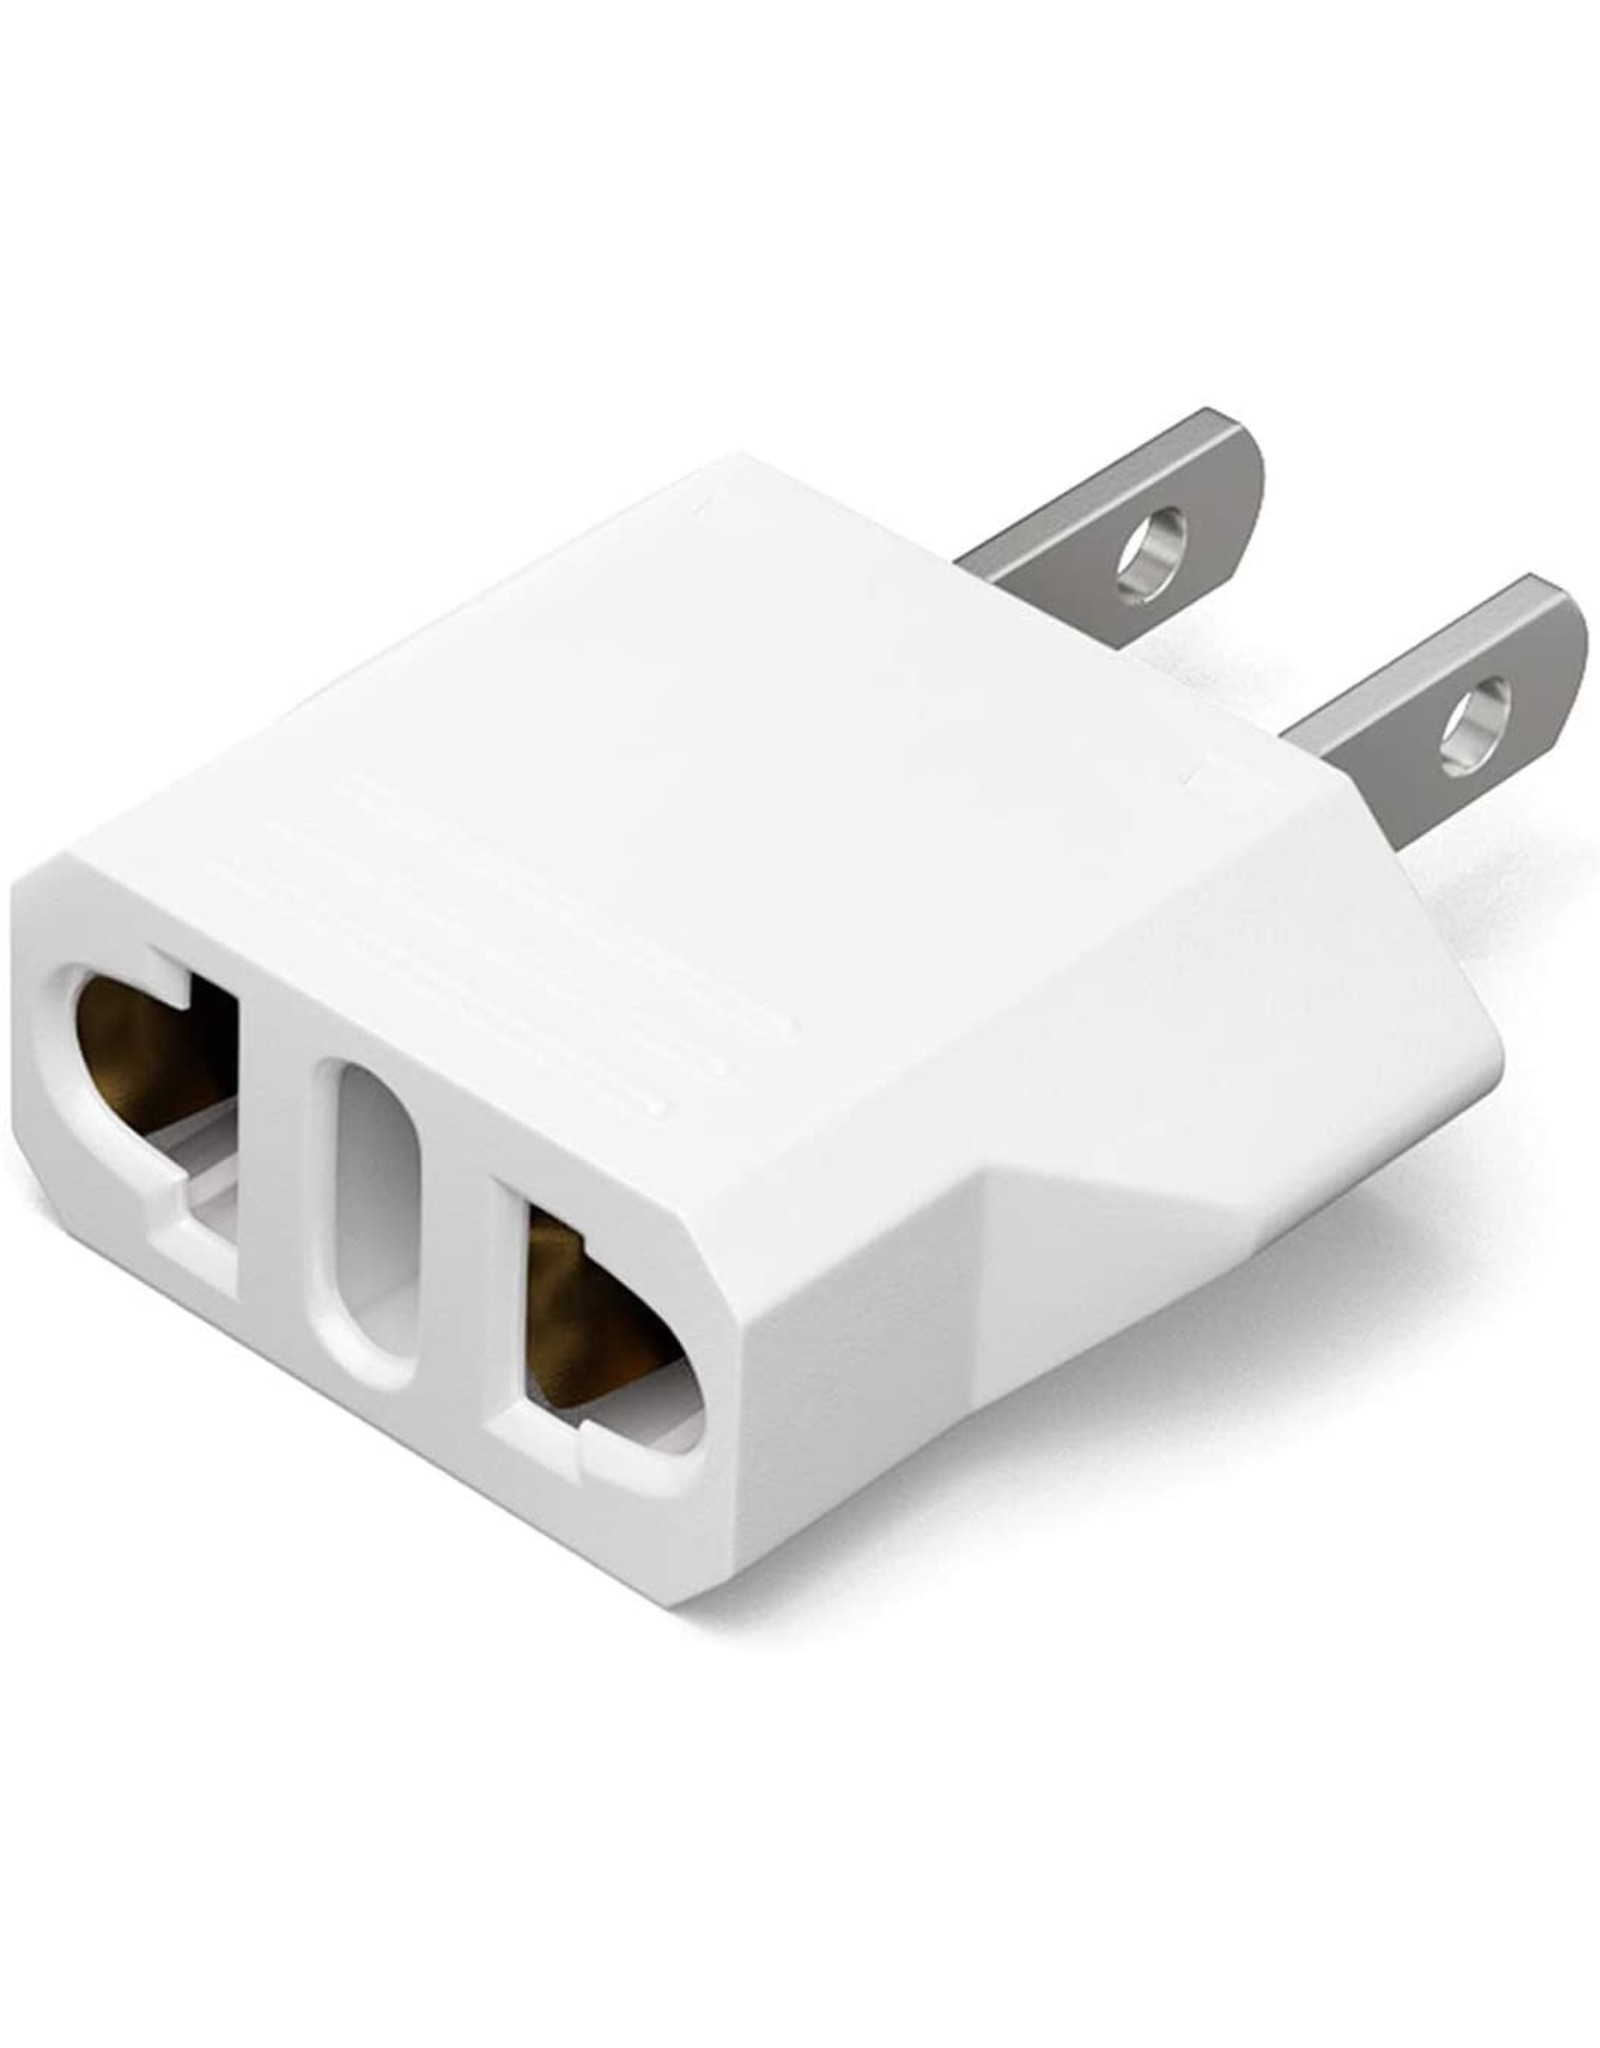 European-US Plug Adapter